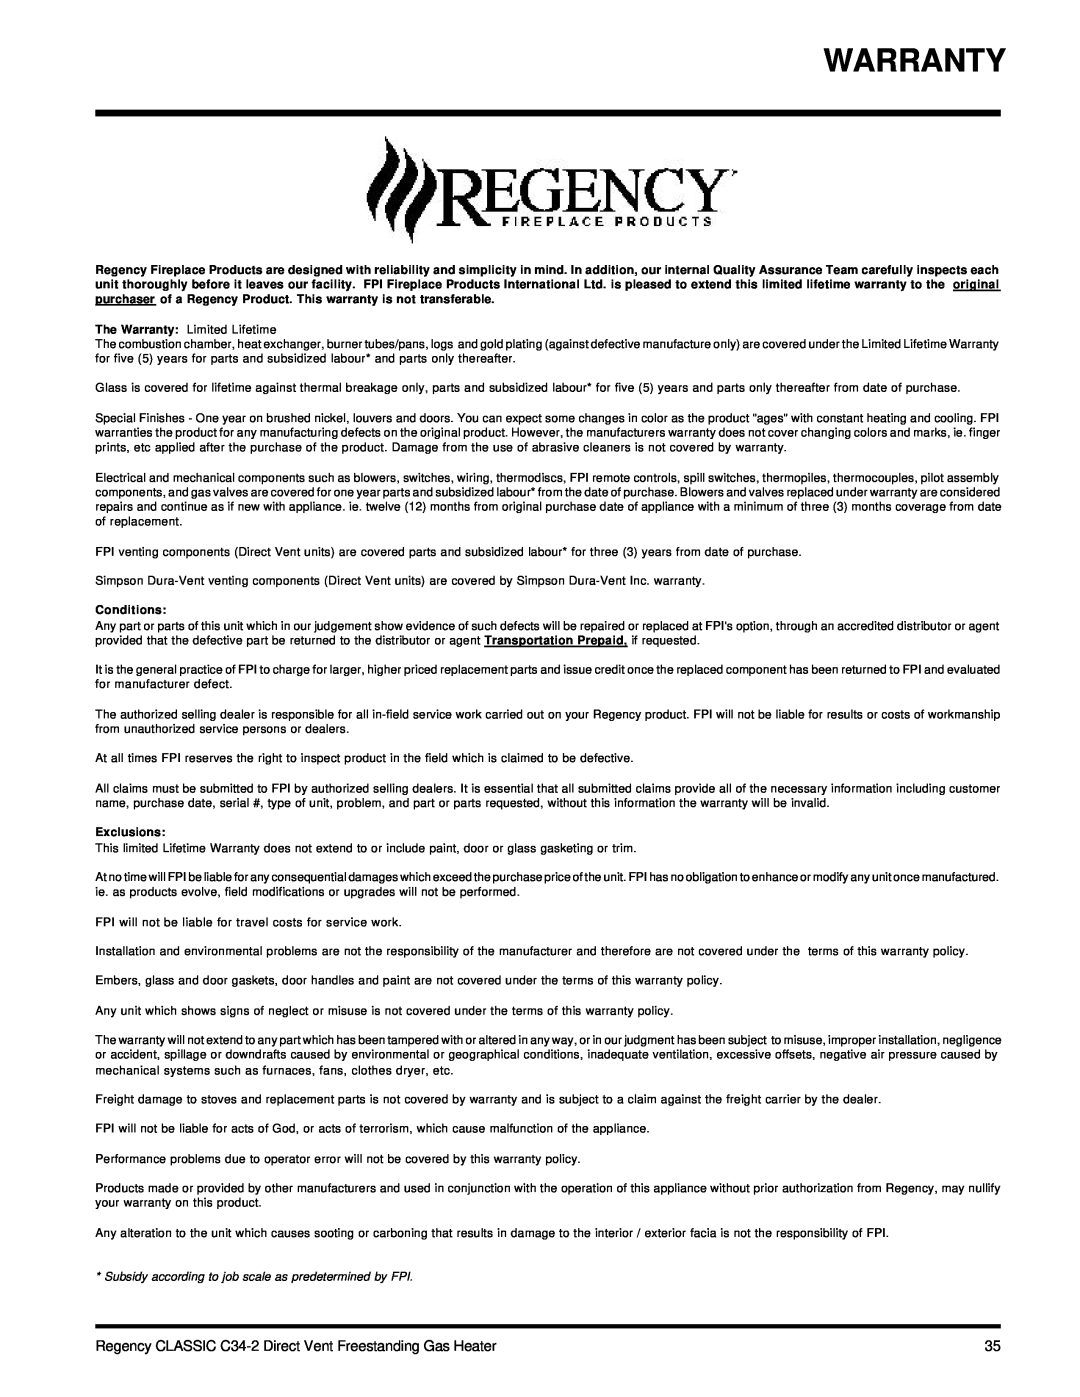 Regency C34-LP2, C34-NG2 installation manual Warranty, Conditions, Exclusions 